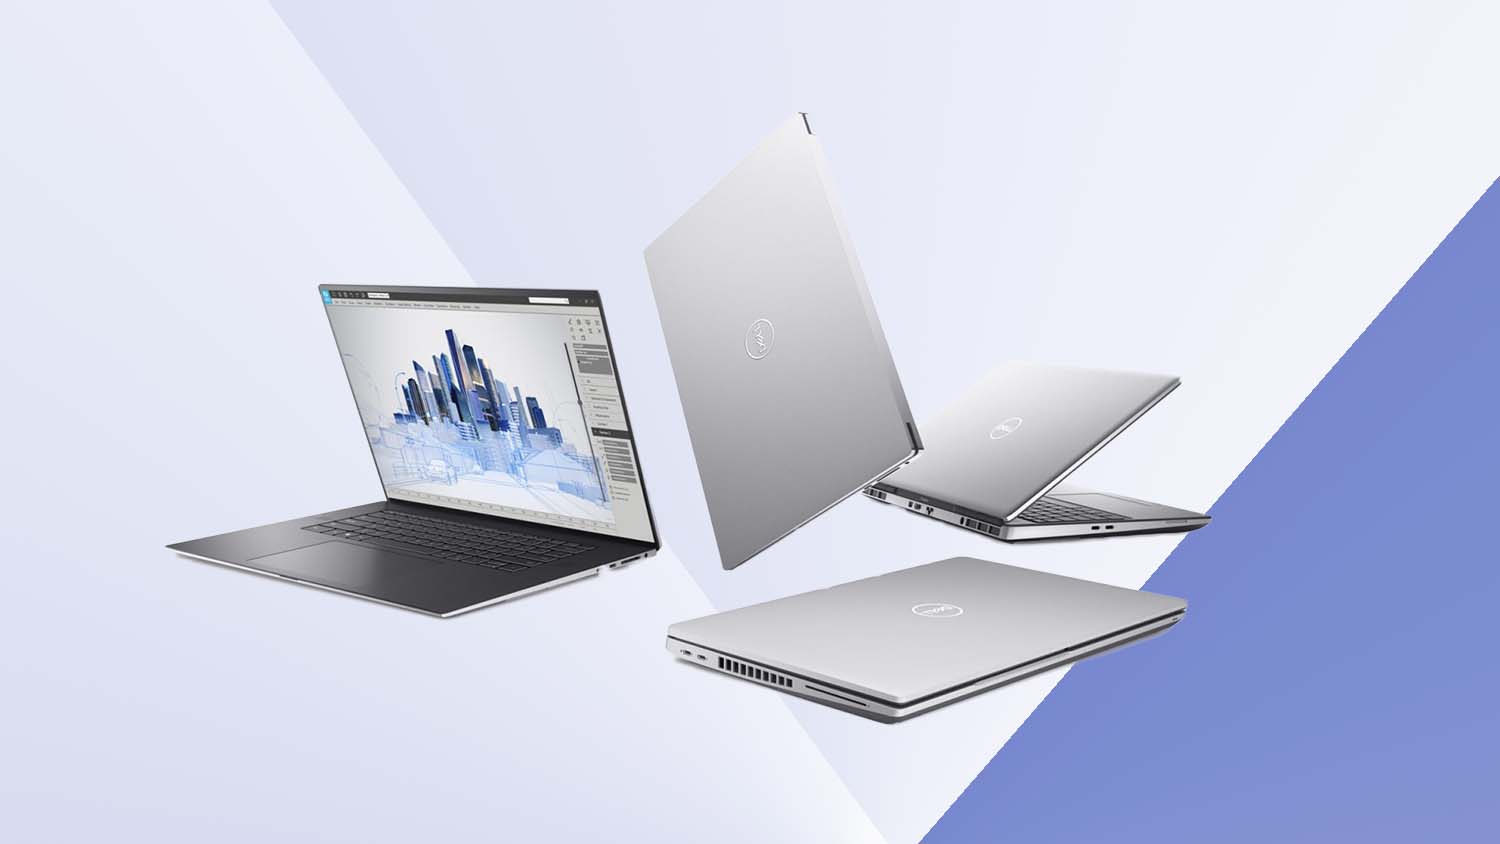 Dell unveils 2021 Precision mobile workstations - DEVELOP3D